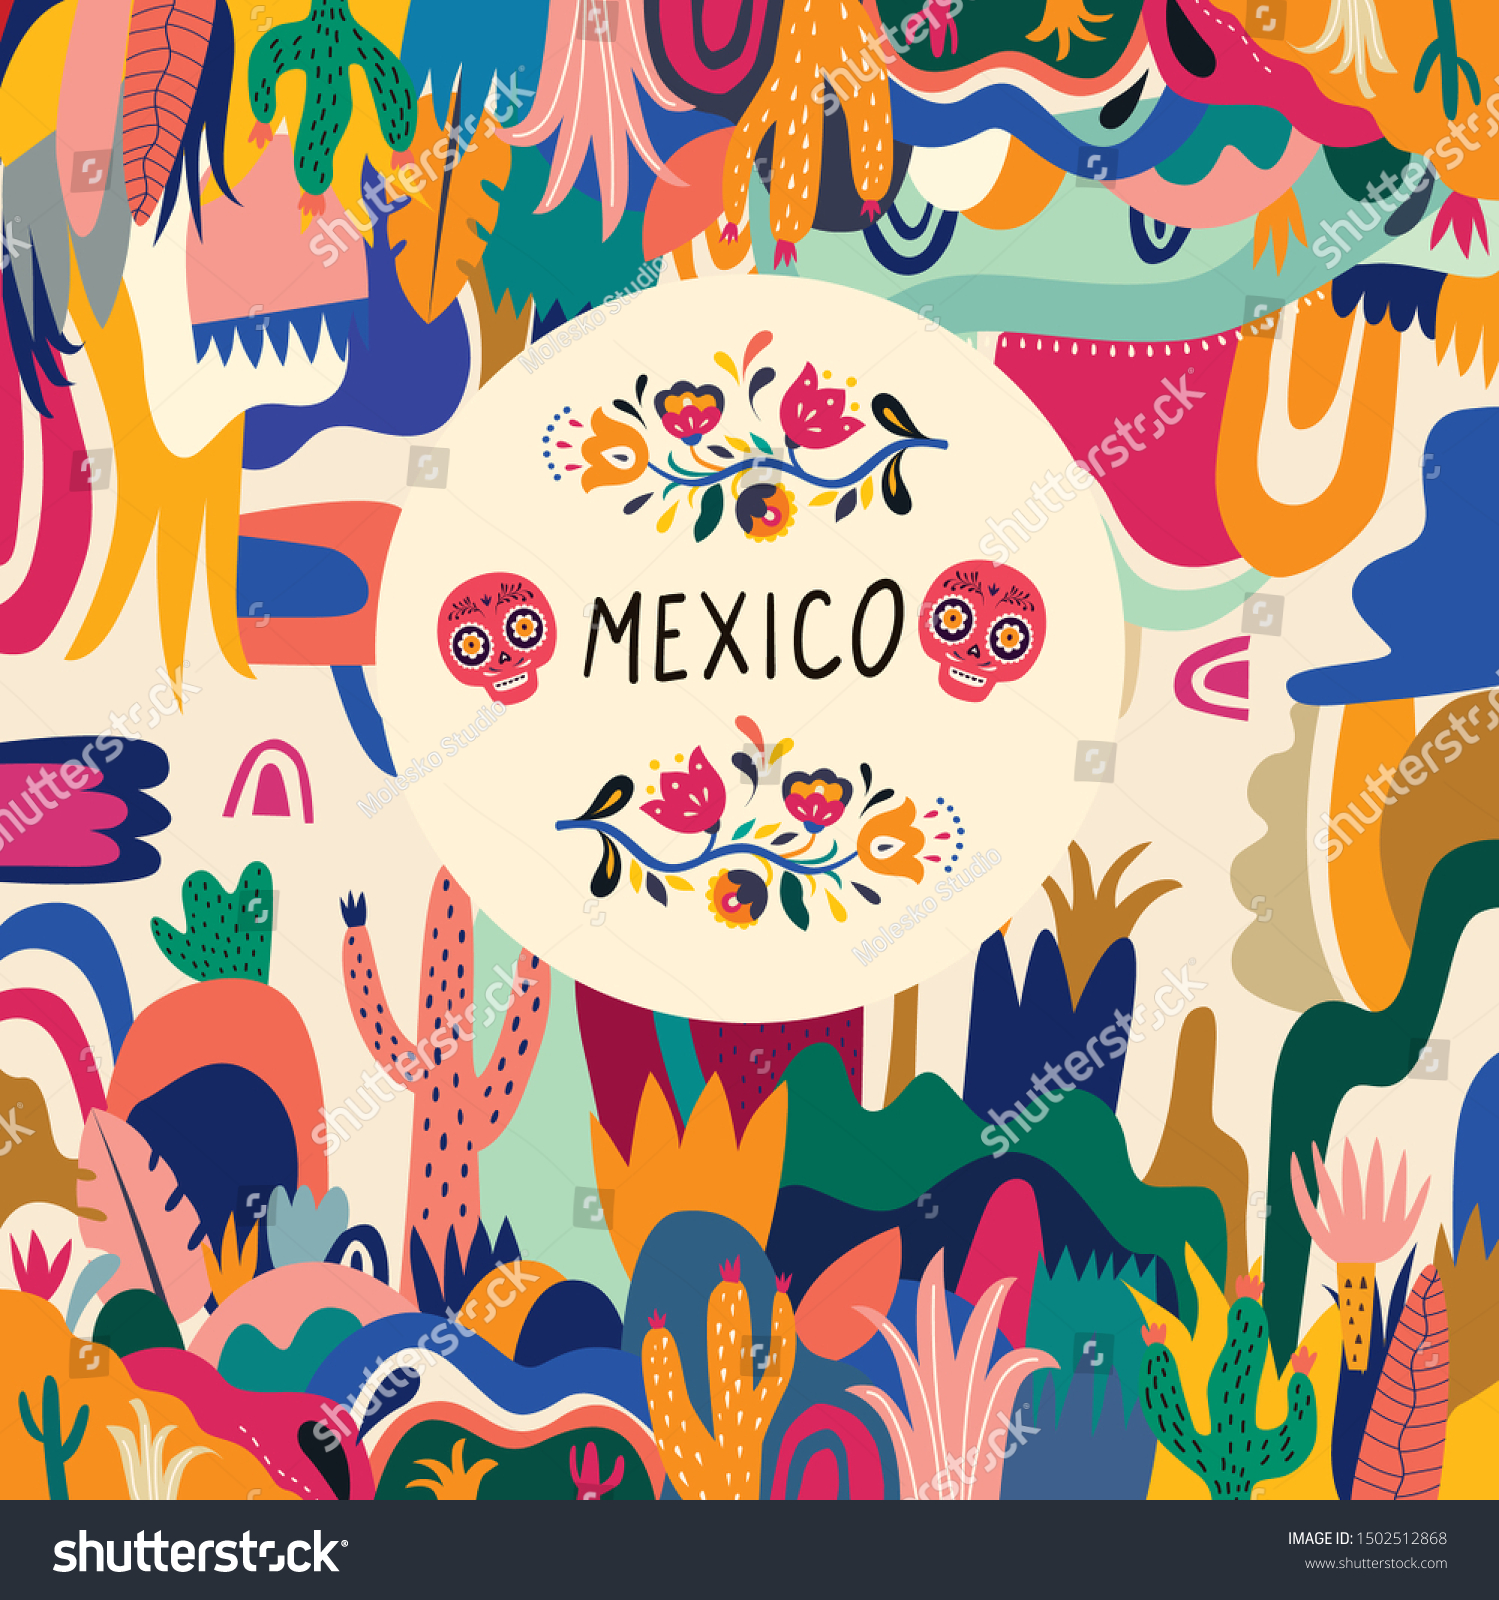 メキシコのベクターイラスト カラフルなメキシコのデザイン メキシコの祝祭日とパーティー用のスタイリッシュな芸術的なメキシコのデコール のベクター画像素材 ロイヤリティフリー